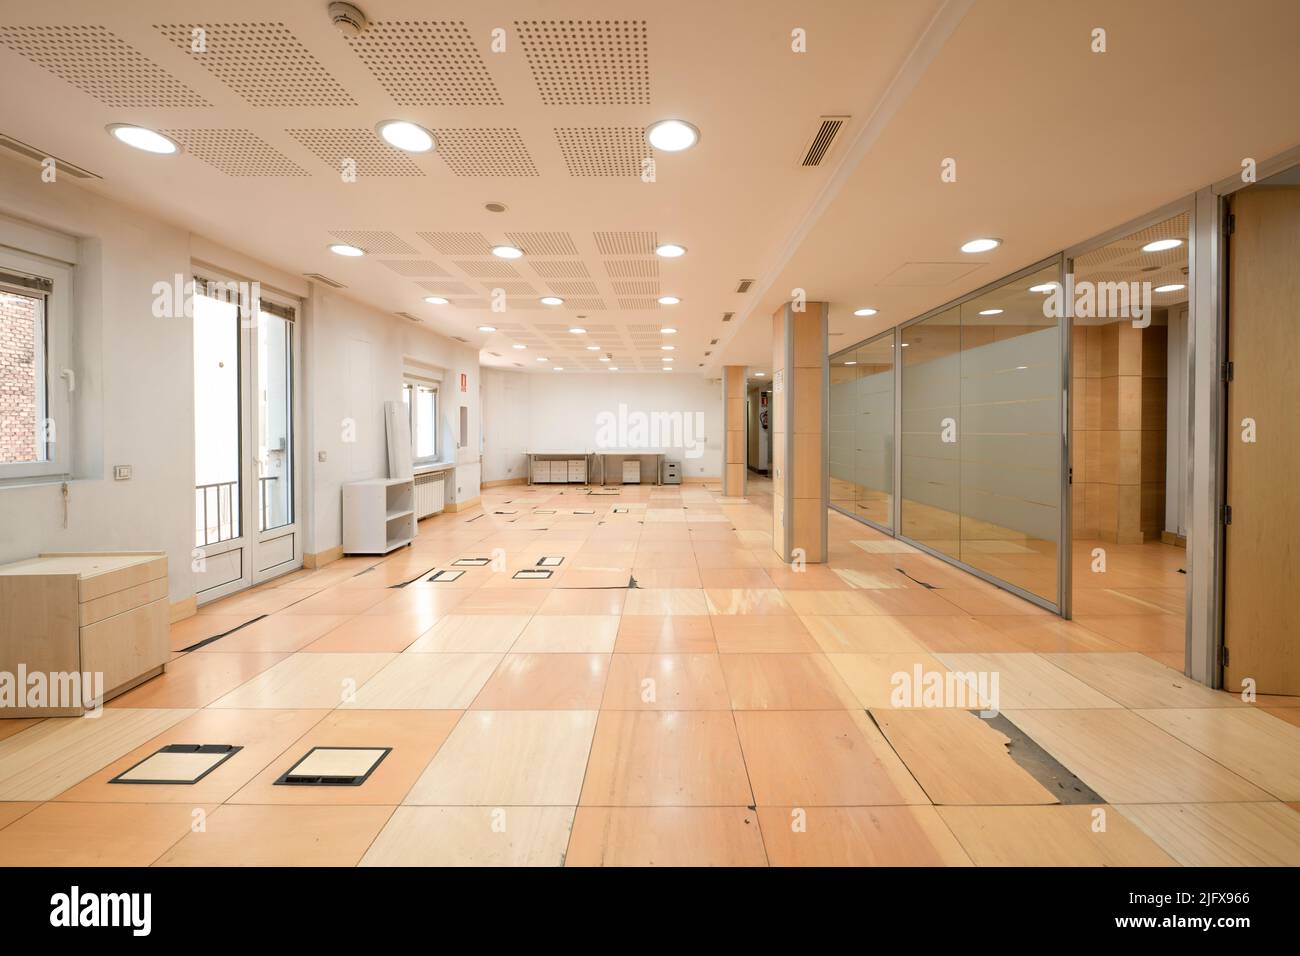 Grande salle pour les bureaux avec plancher technique nécessitant des améliorations et cloisons en acier et en verre Banque D'Images